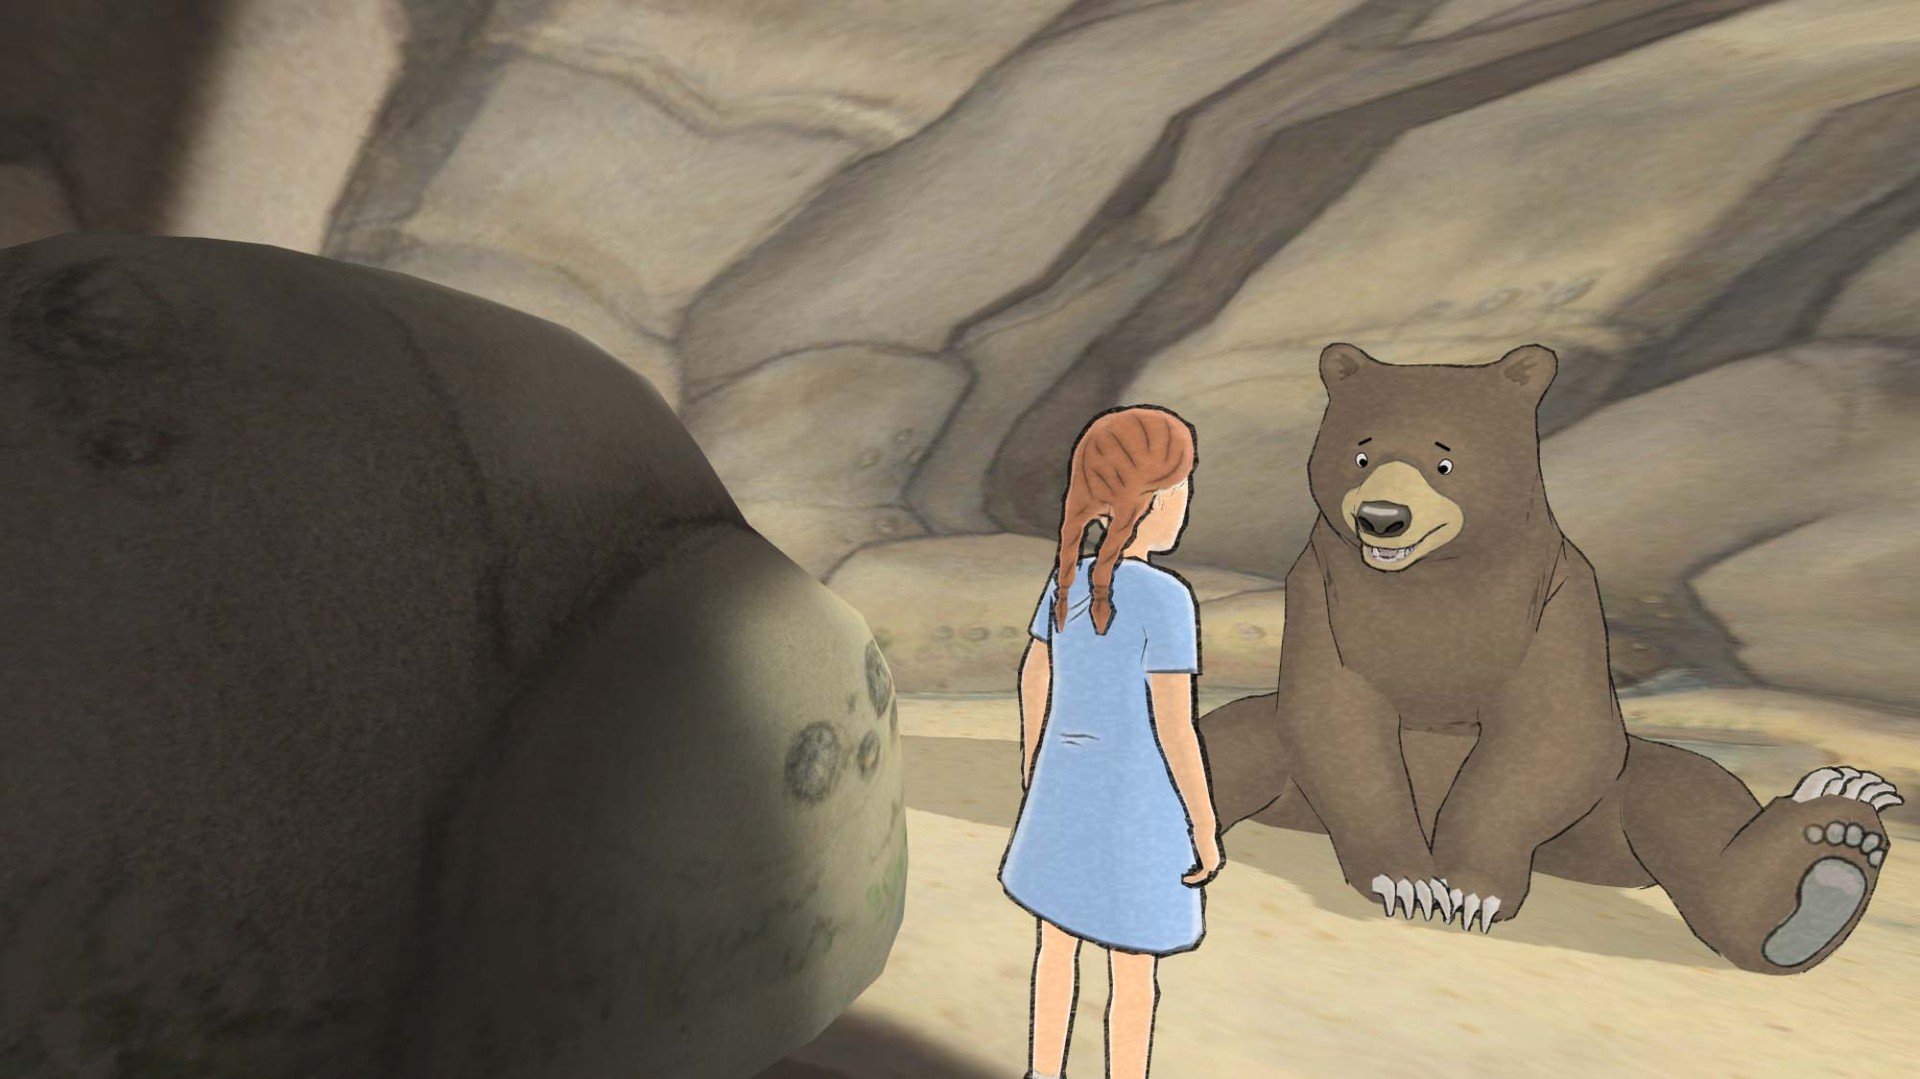 We Re Going On A Bear Hunt レビュー 絵本 きょうはみんなでクマがりだ がゲーム化 可愛い世界とクマに癒やされろ